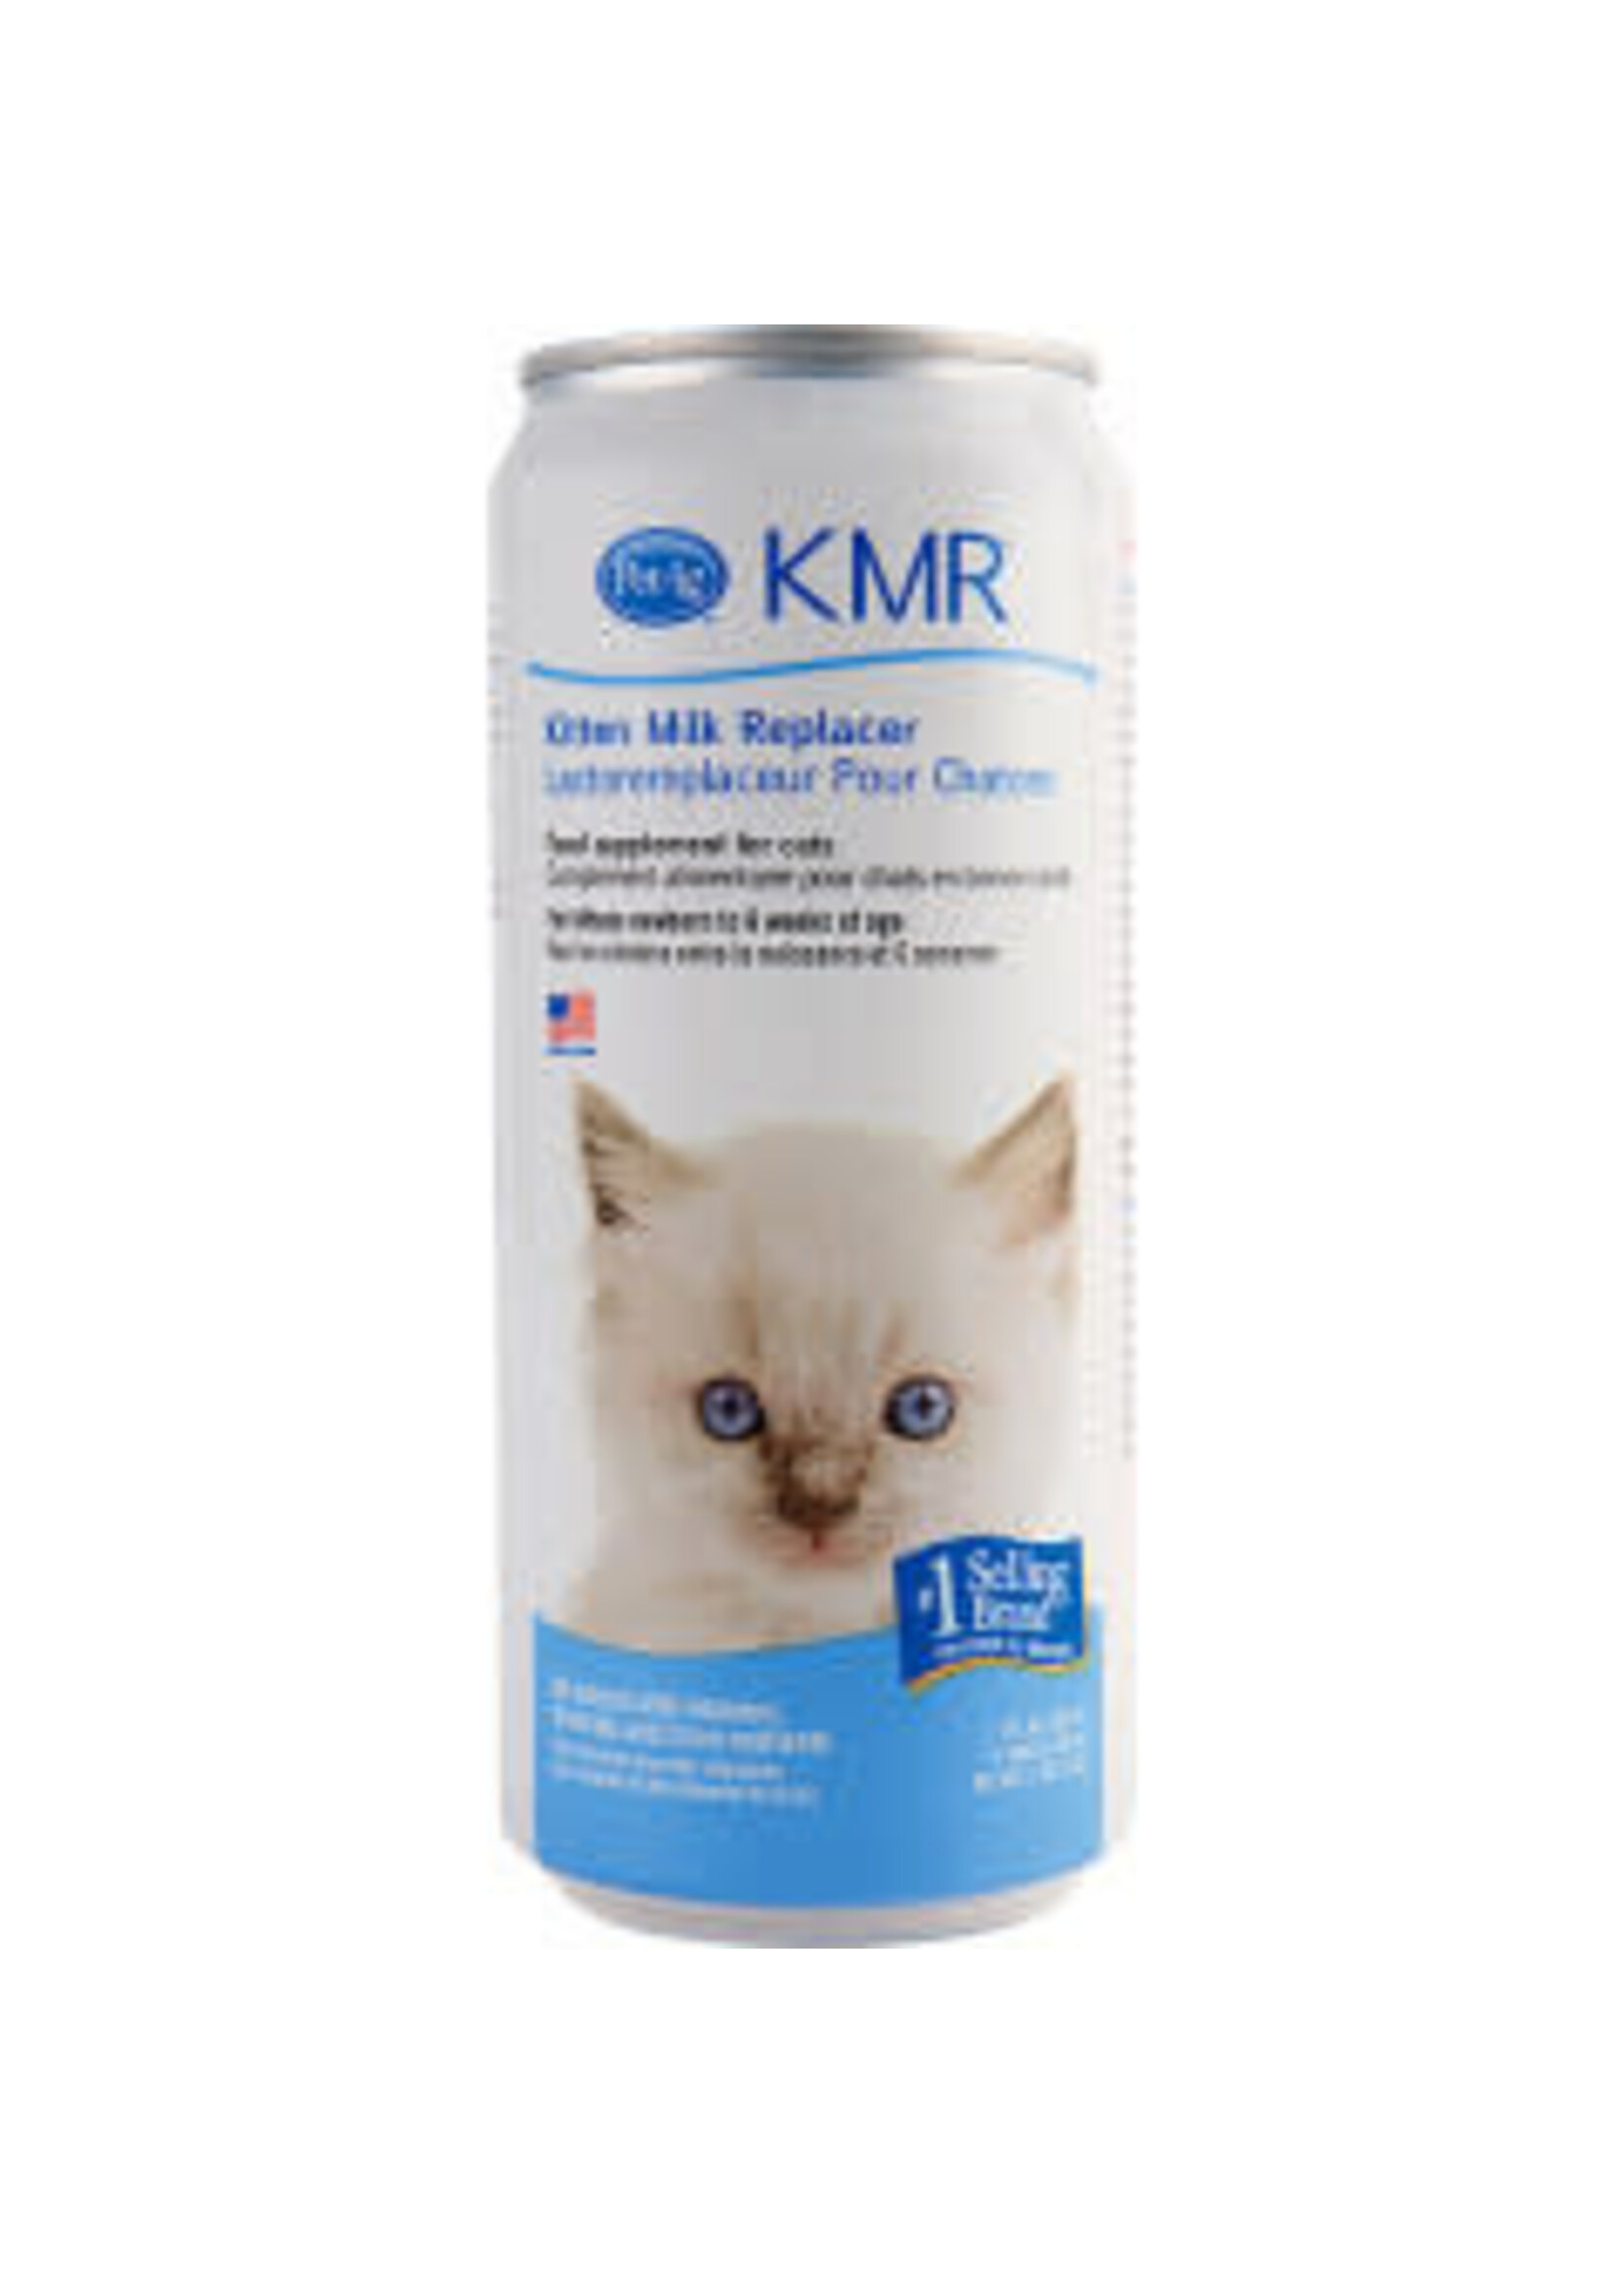 Pet-Ag Pet-Ag - KMR Liquid Milk Replacer 11oz Kitten